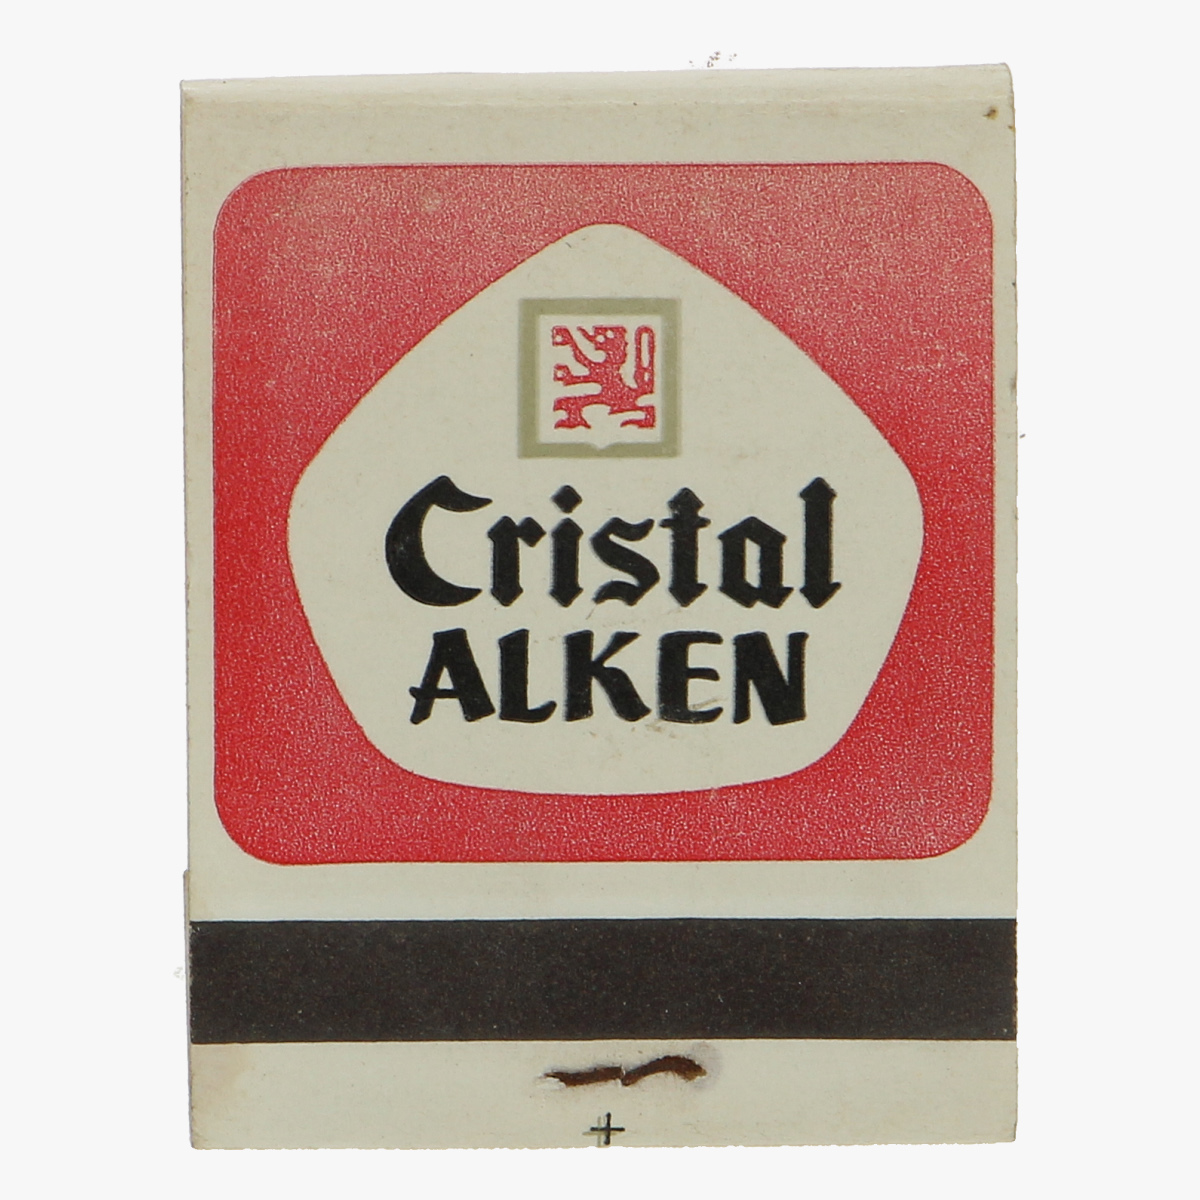 Afbeeldingen van oud doosje lucifers Cristal Alken